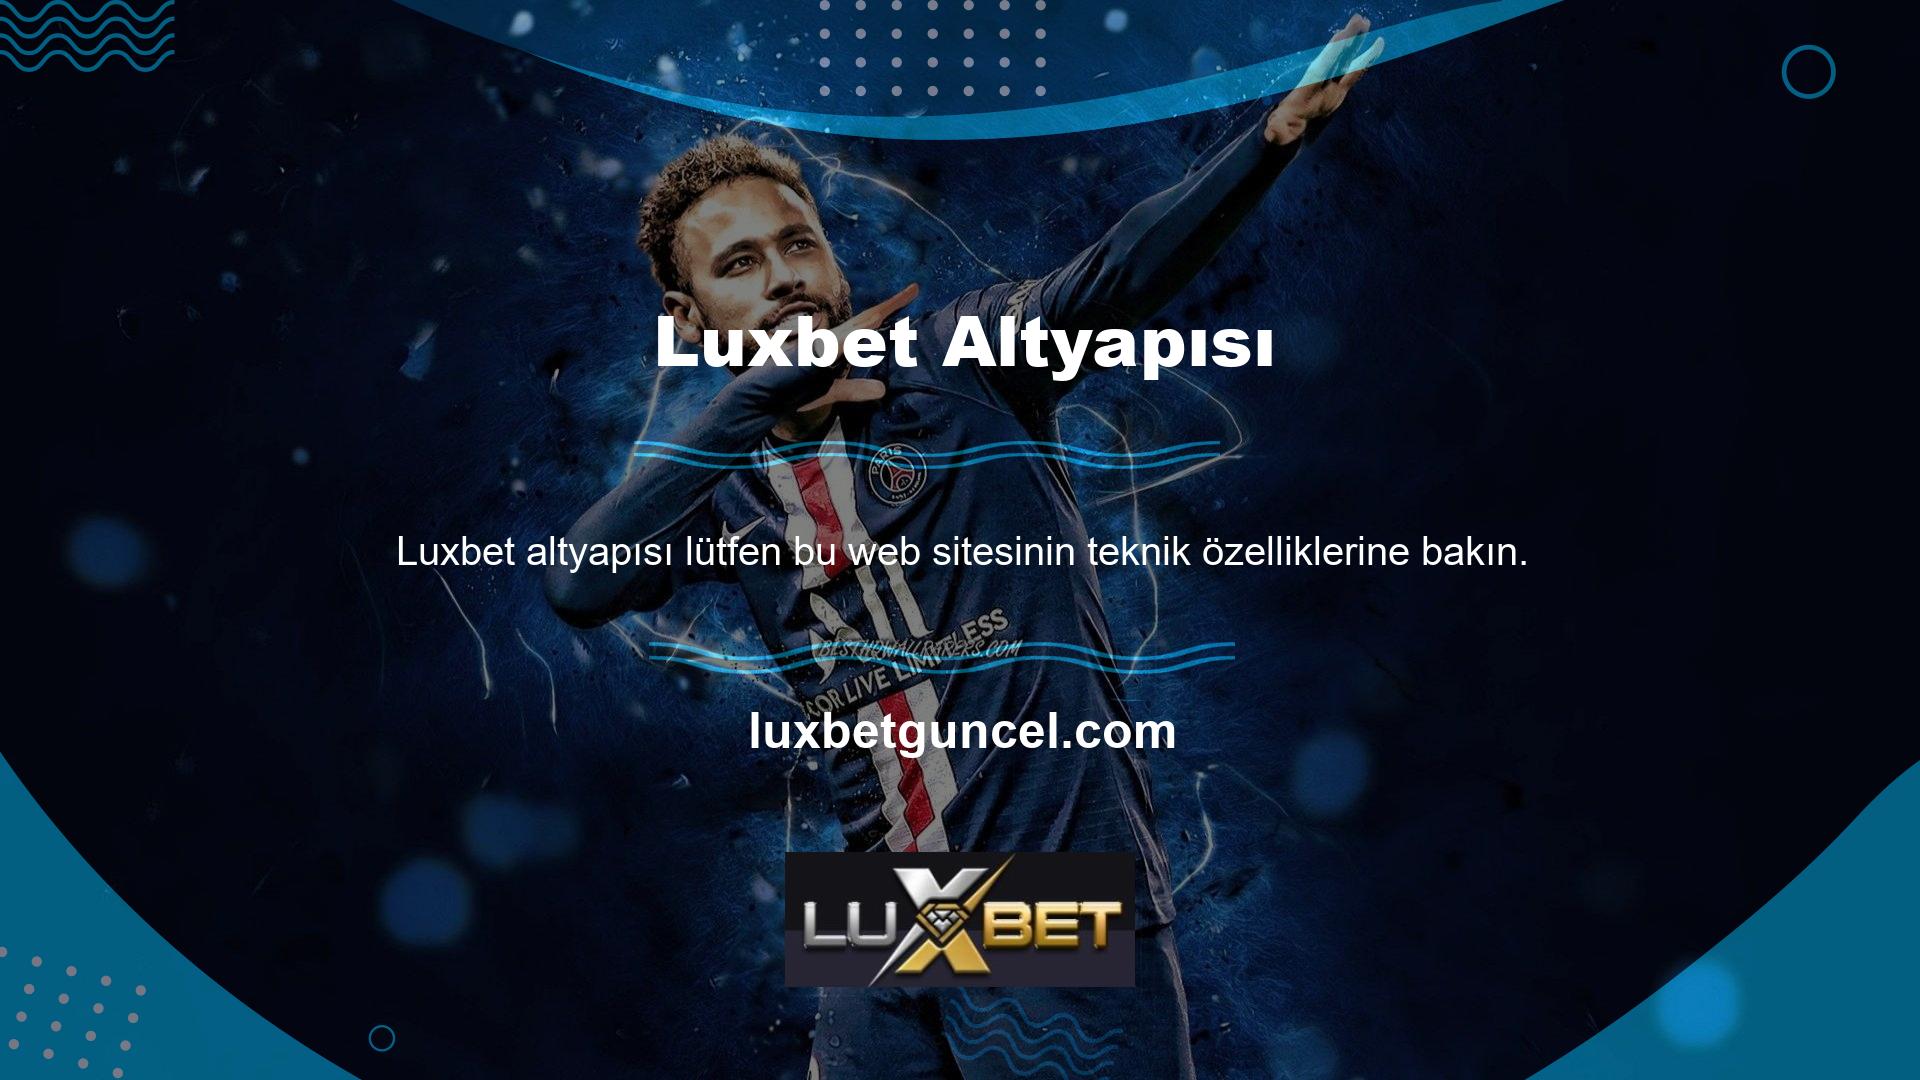 Luxbet altyapısına bir göz atalım